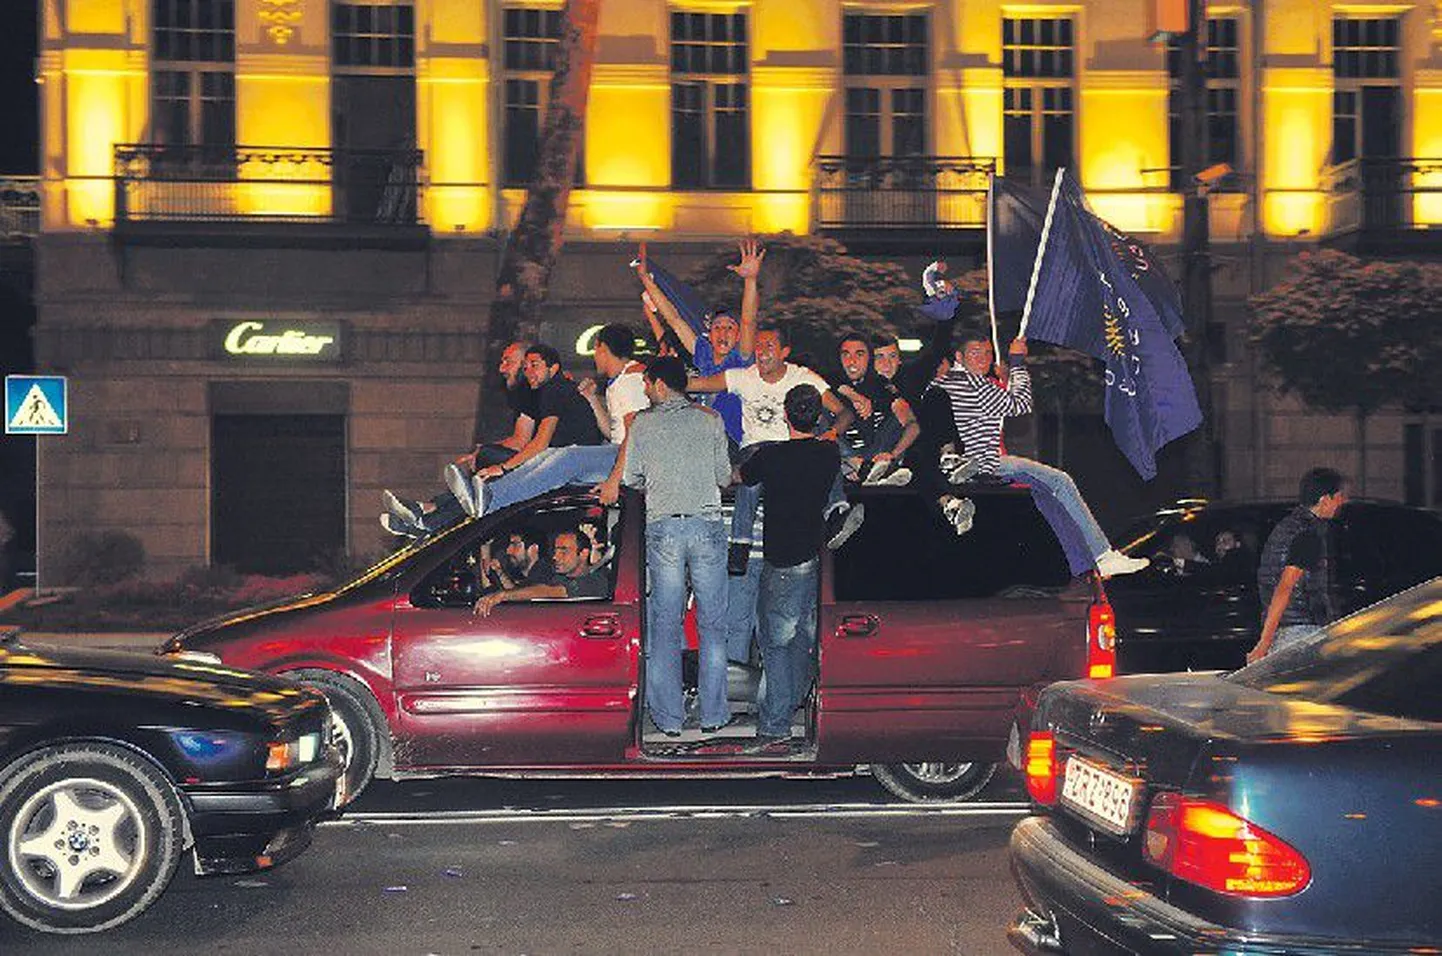 После того как в понедельник вечером стало известно о победе на парламентских выборах в Грузии оппозиционной партии «Грузинская мечта», ликующие сторонники оппозиции вышли на улицы Тбилиси праздновать победу.